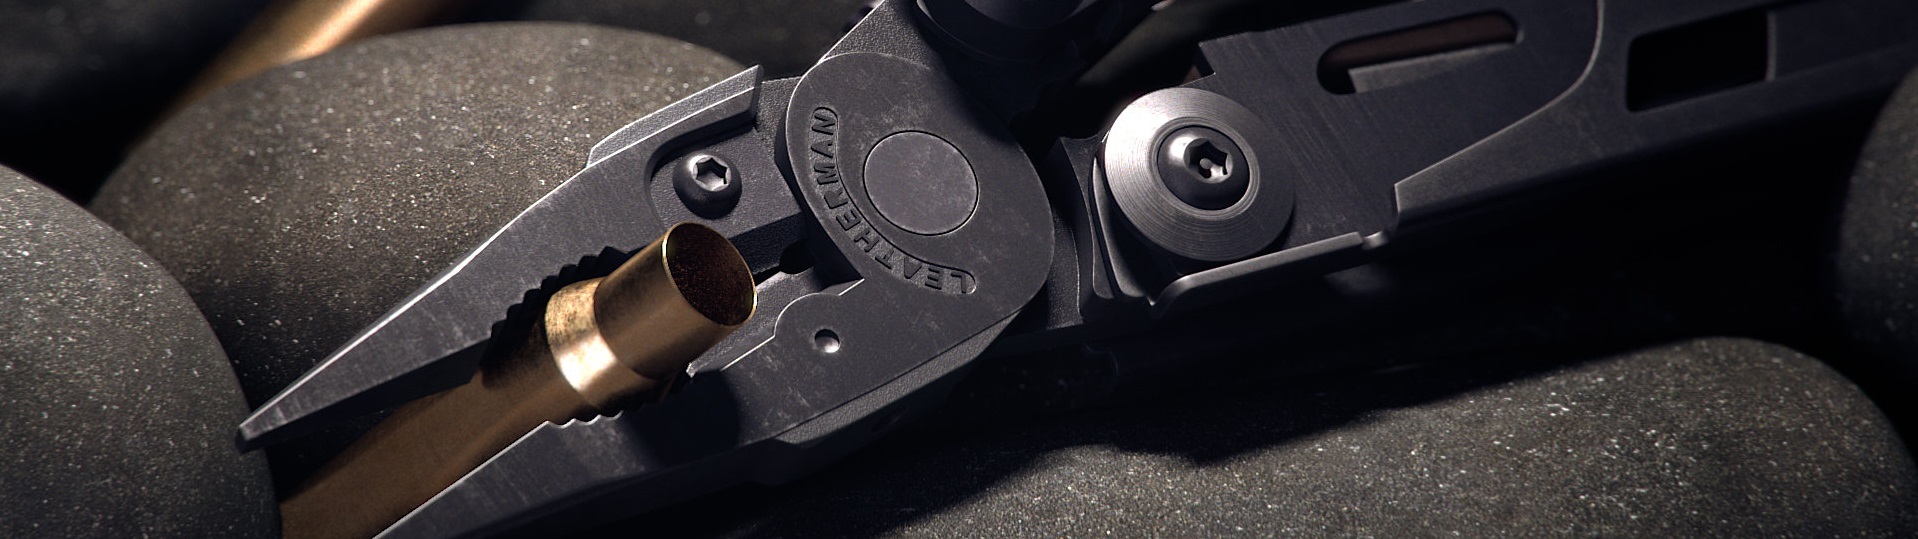 Многофункциональный военный инструмент Leatherman MUT Black с съемными компонентами для быстрой и легкой настройки инструментов для работы с оружием